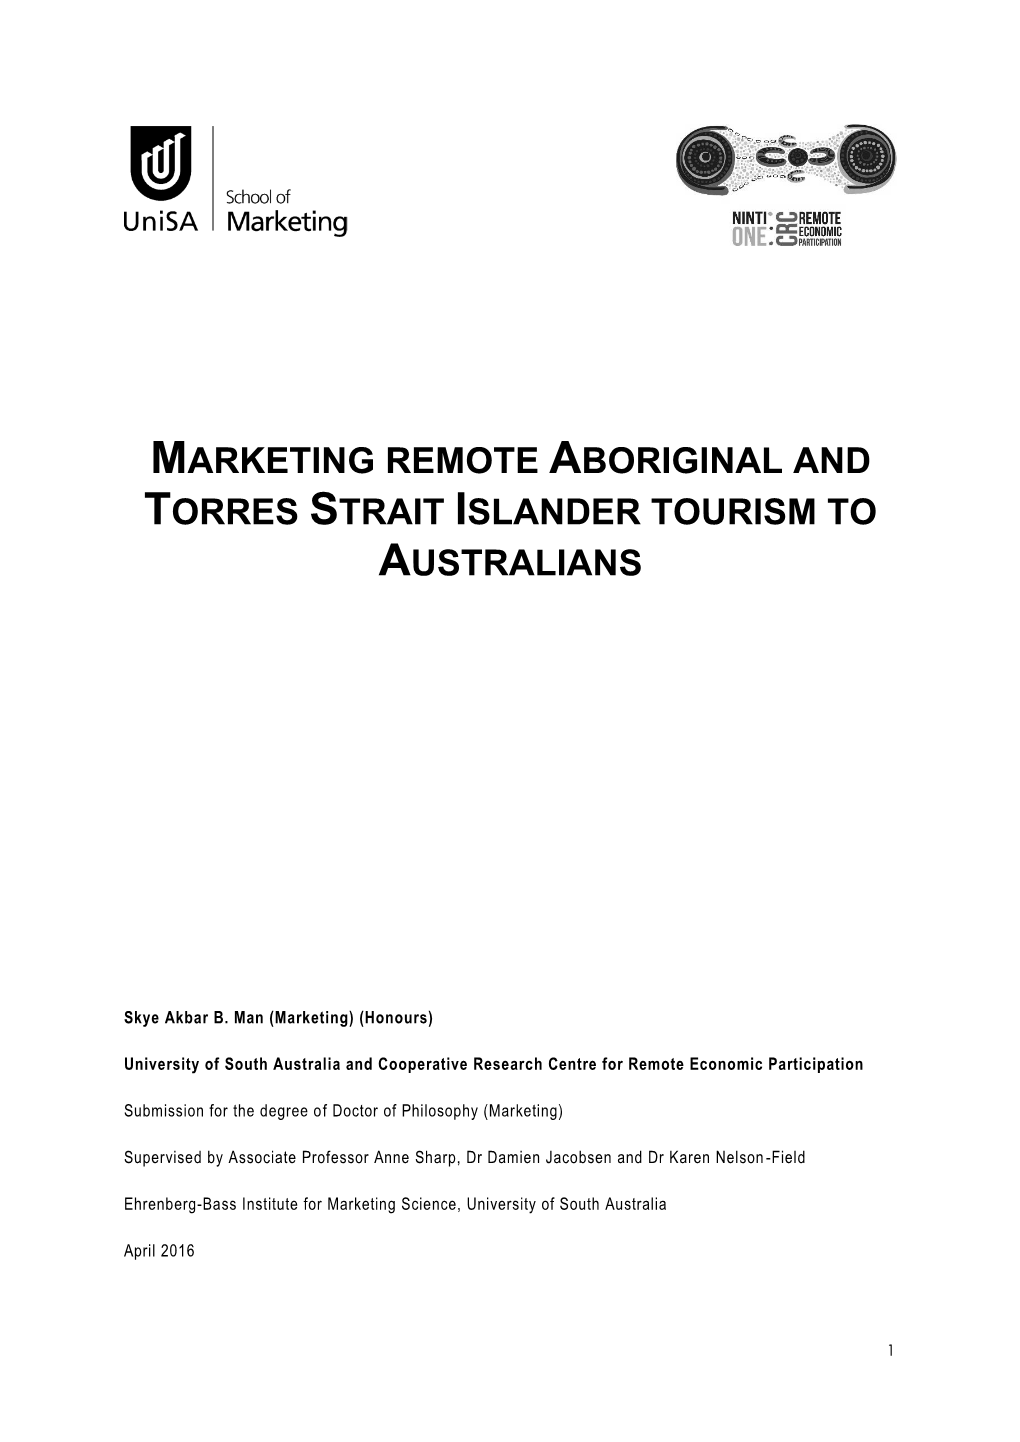 Marketing Remote Aboriginal and Torres Strait Islander Tourism to Australians